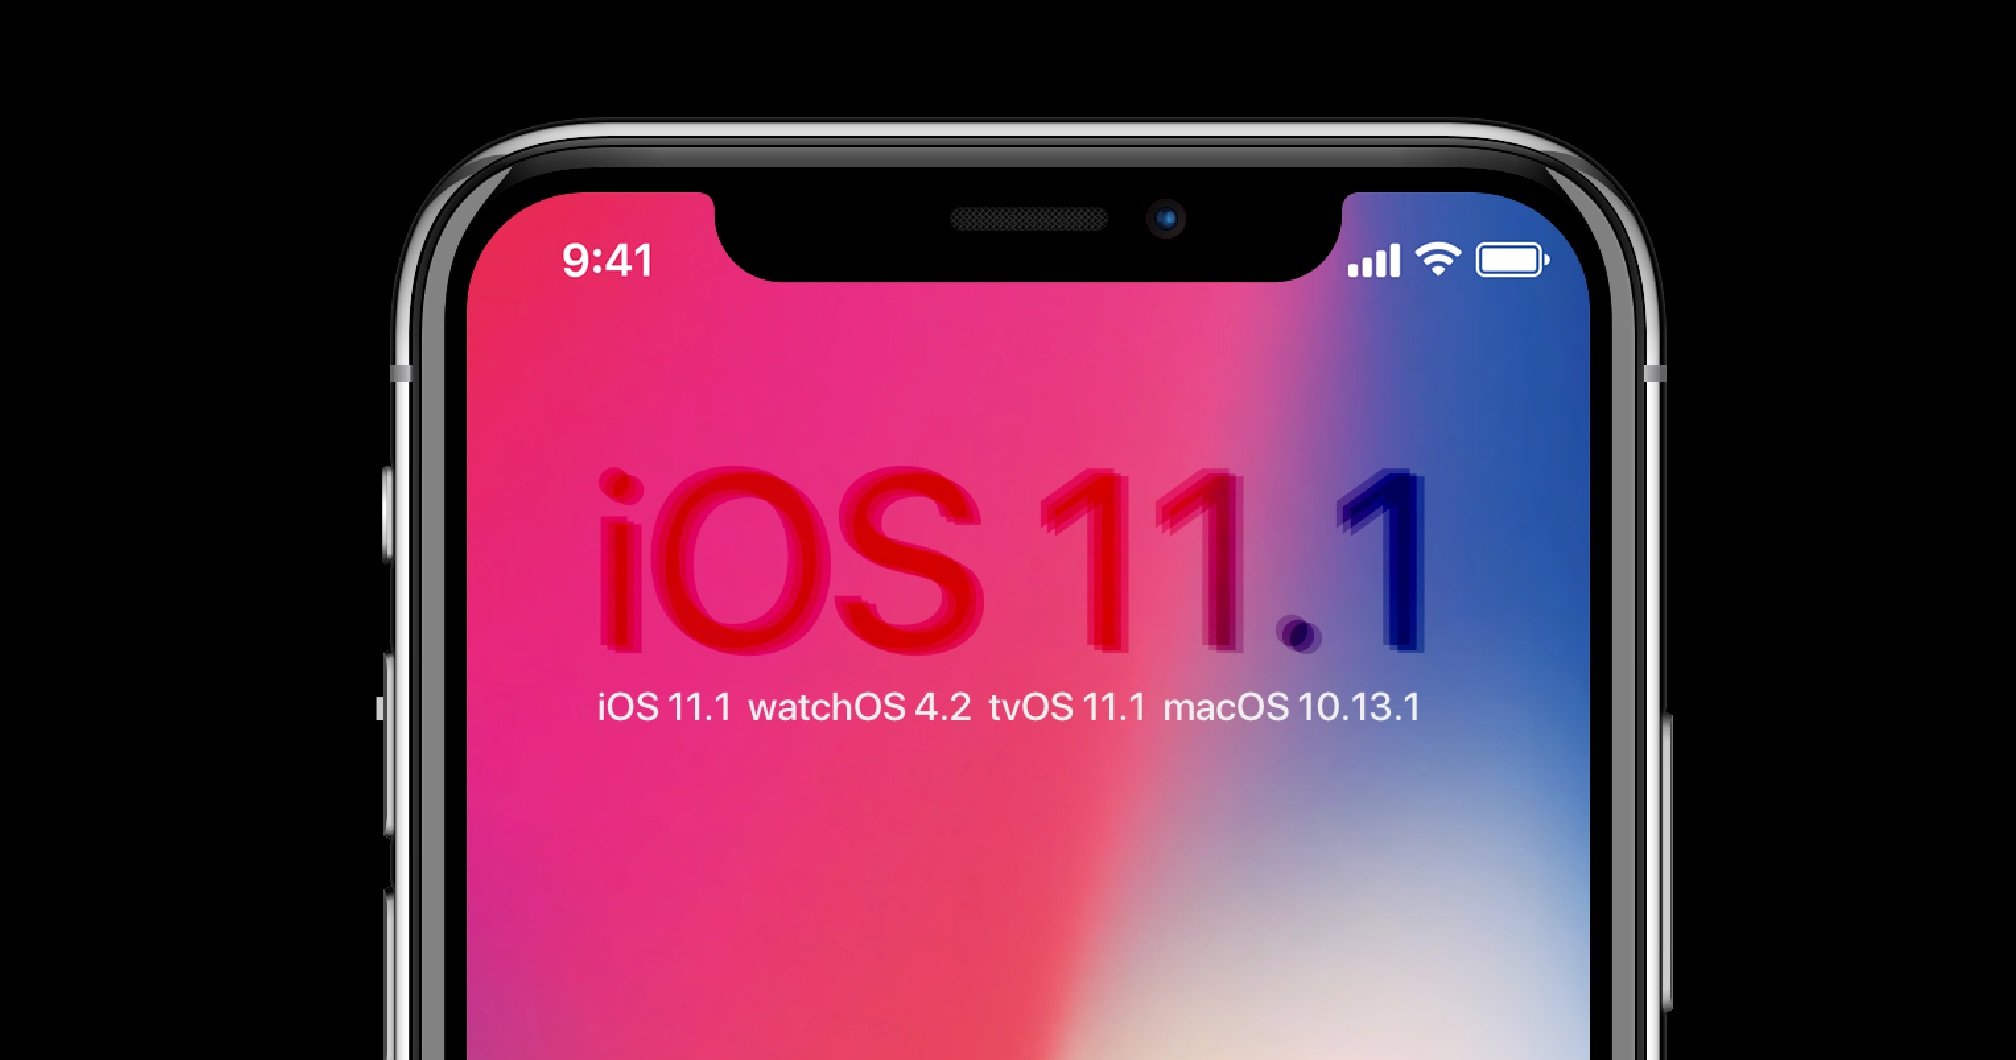 Update: iOS 11.1, watchOS 4.1, tvOS 11.1 & macOS High Sierra 10.13.1 12